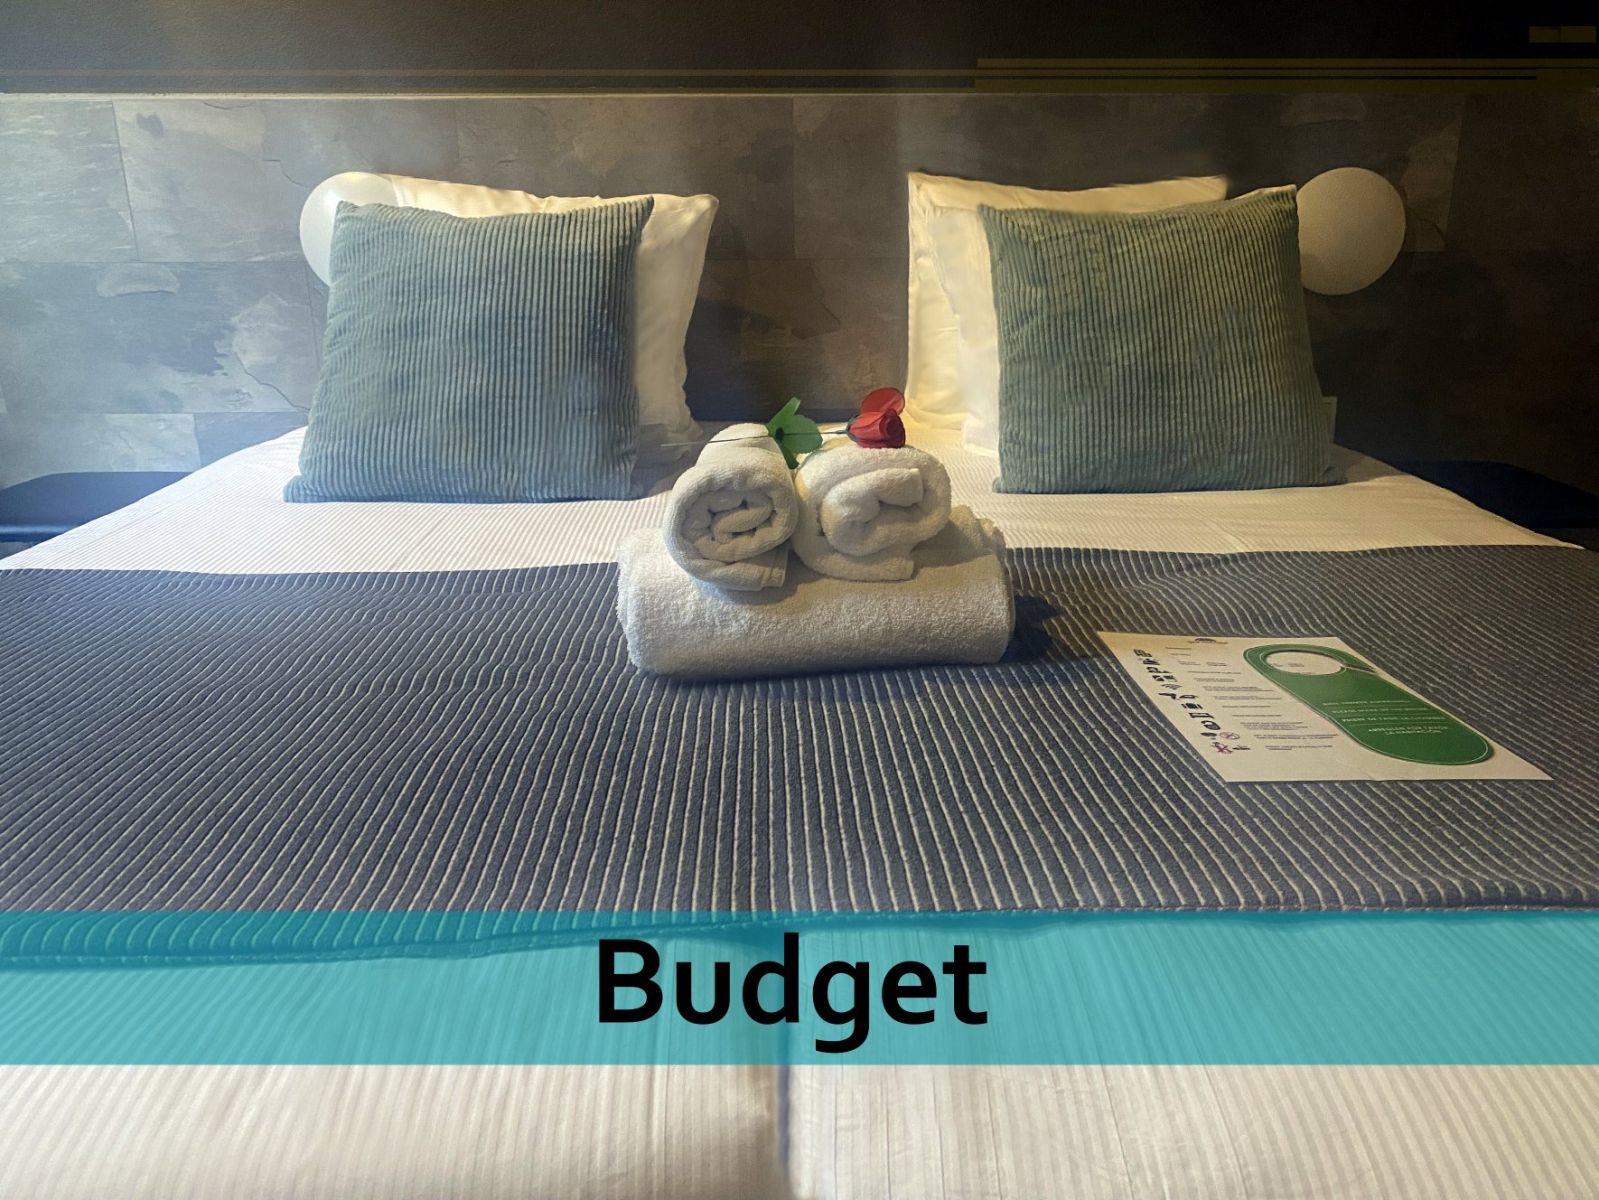 Budget Twin room 